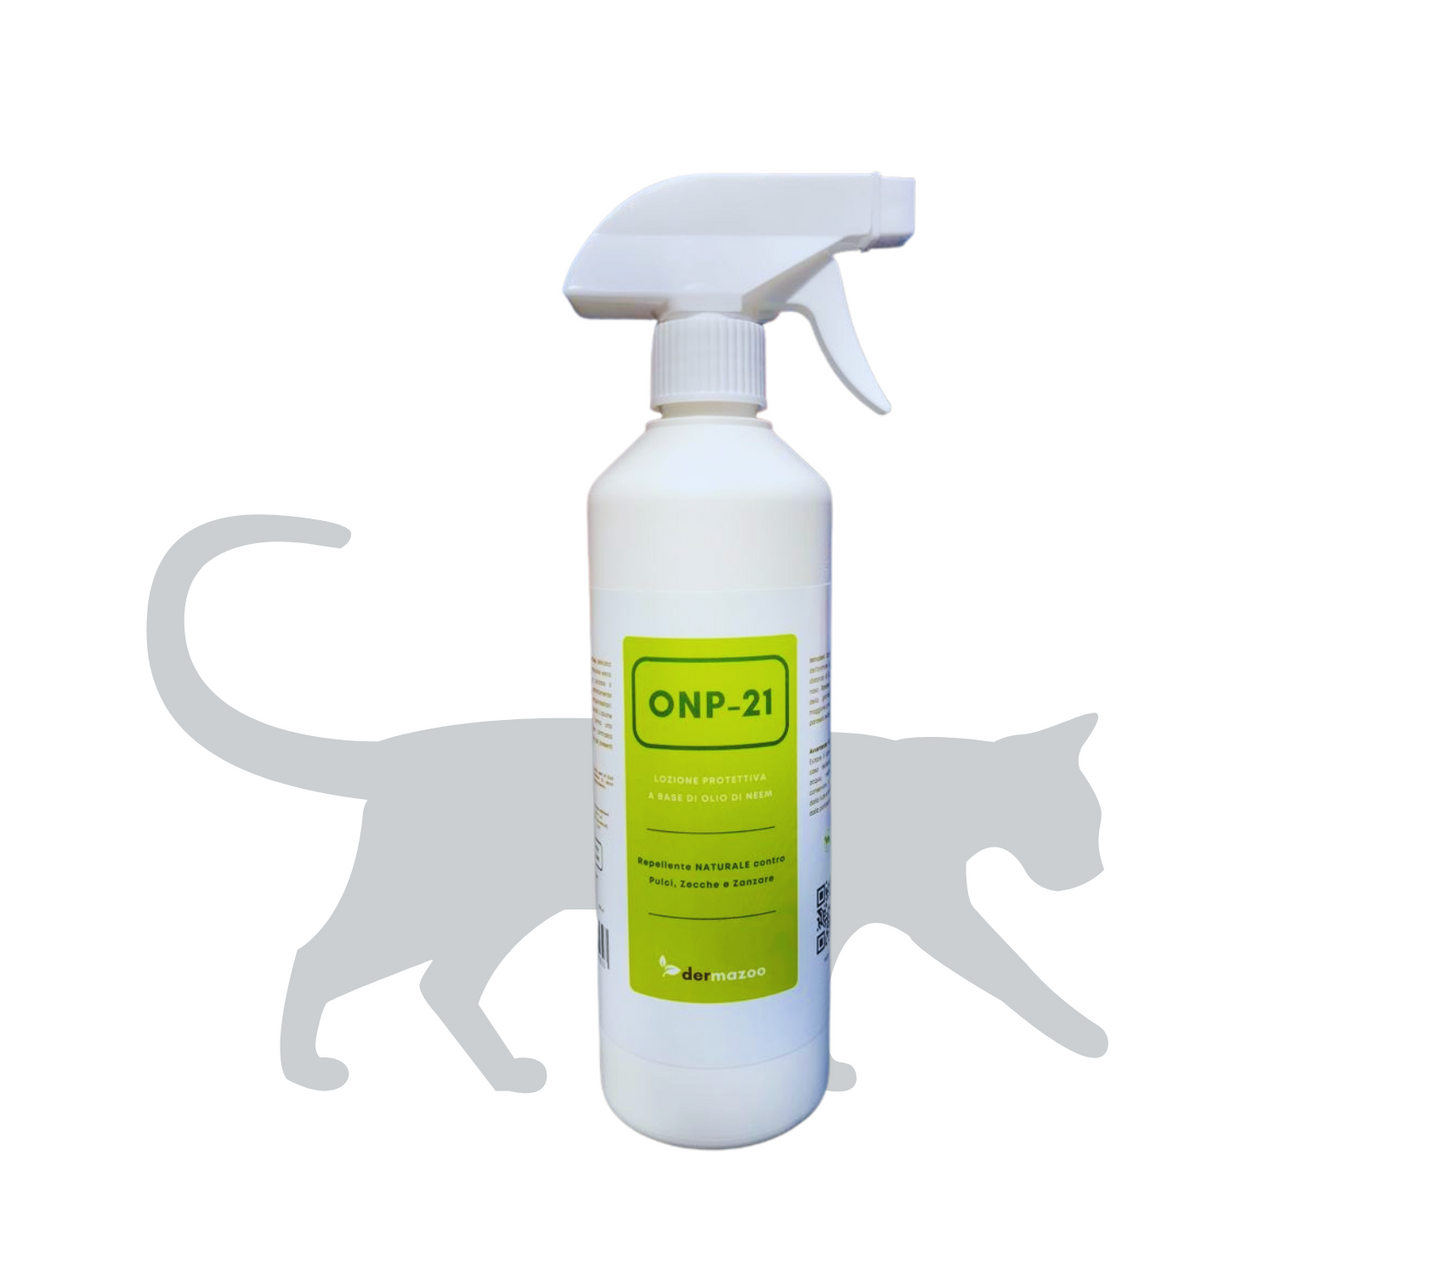 dermazoo - Olio di Neem per Gatti Repellente Spray